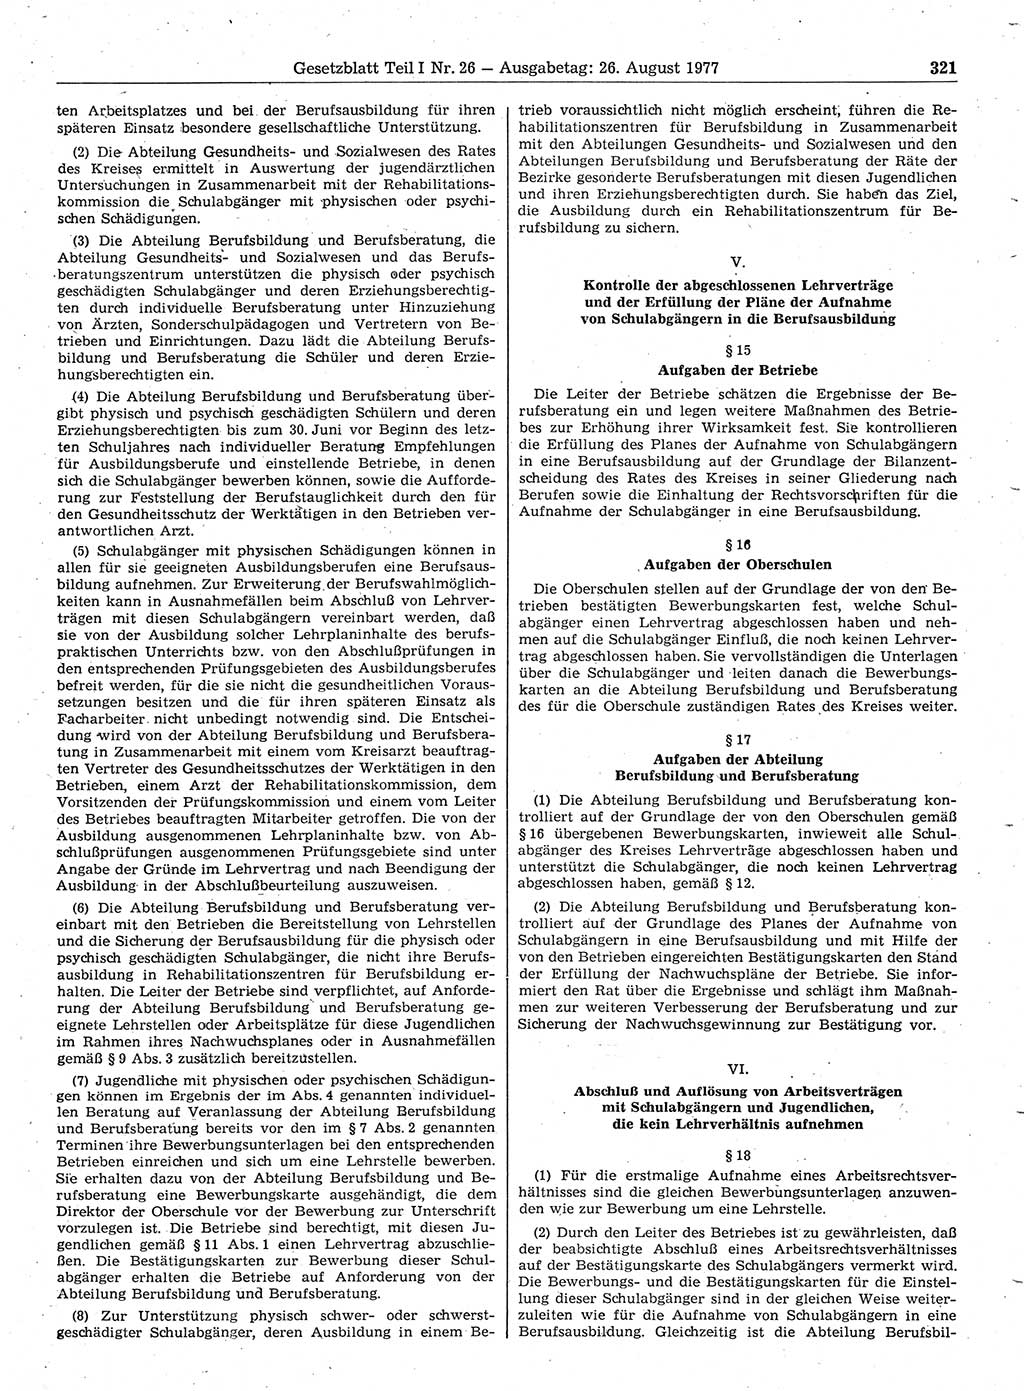 Gesetzblatt (GBl.) der Deutschen Demokratischen Republik (DDR) Teil Ⅰ 1977, Seite 321 (GBl. DDR Ⅰ 1977, S. 321)